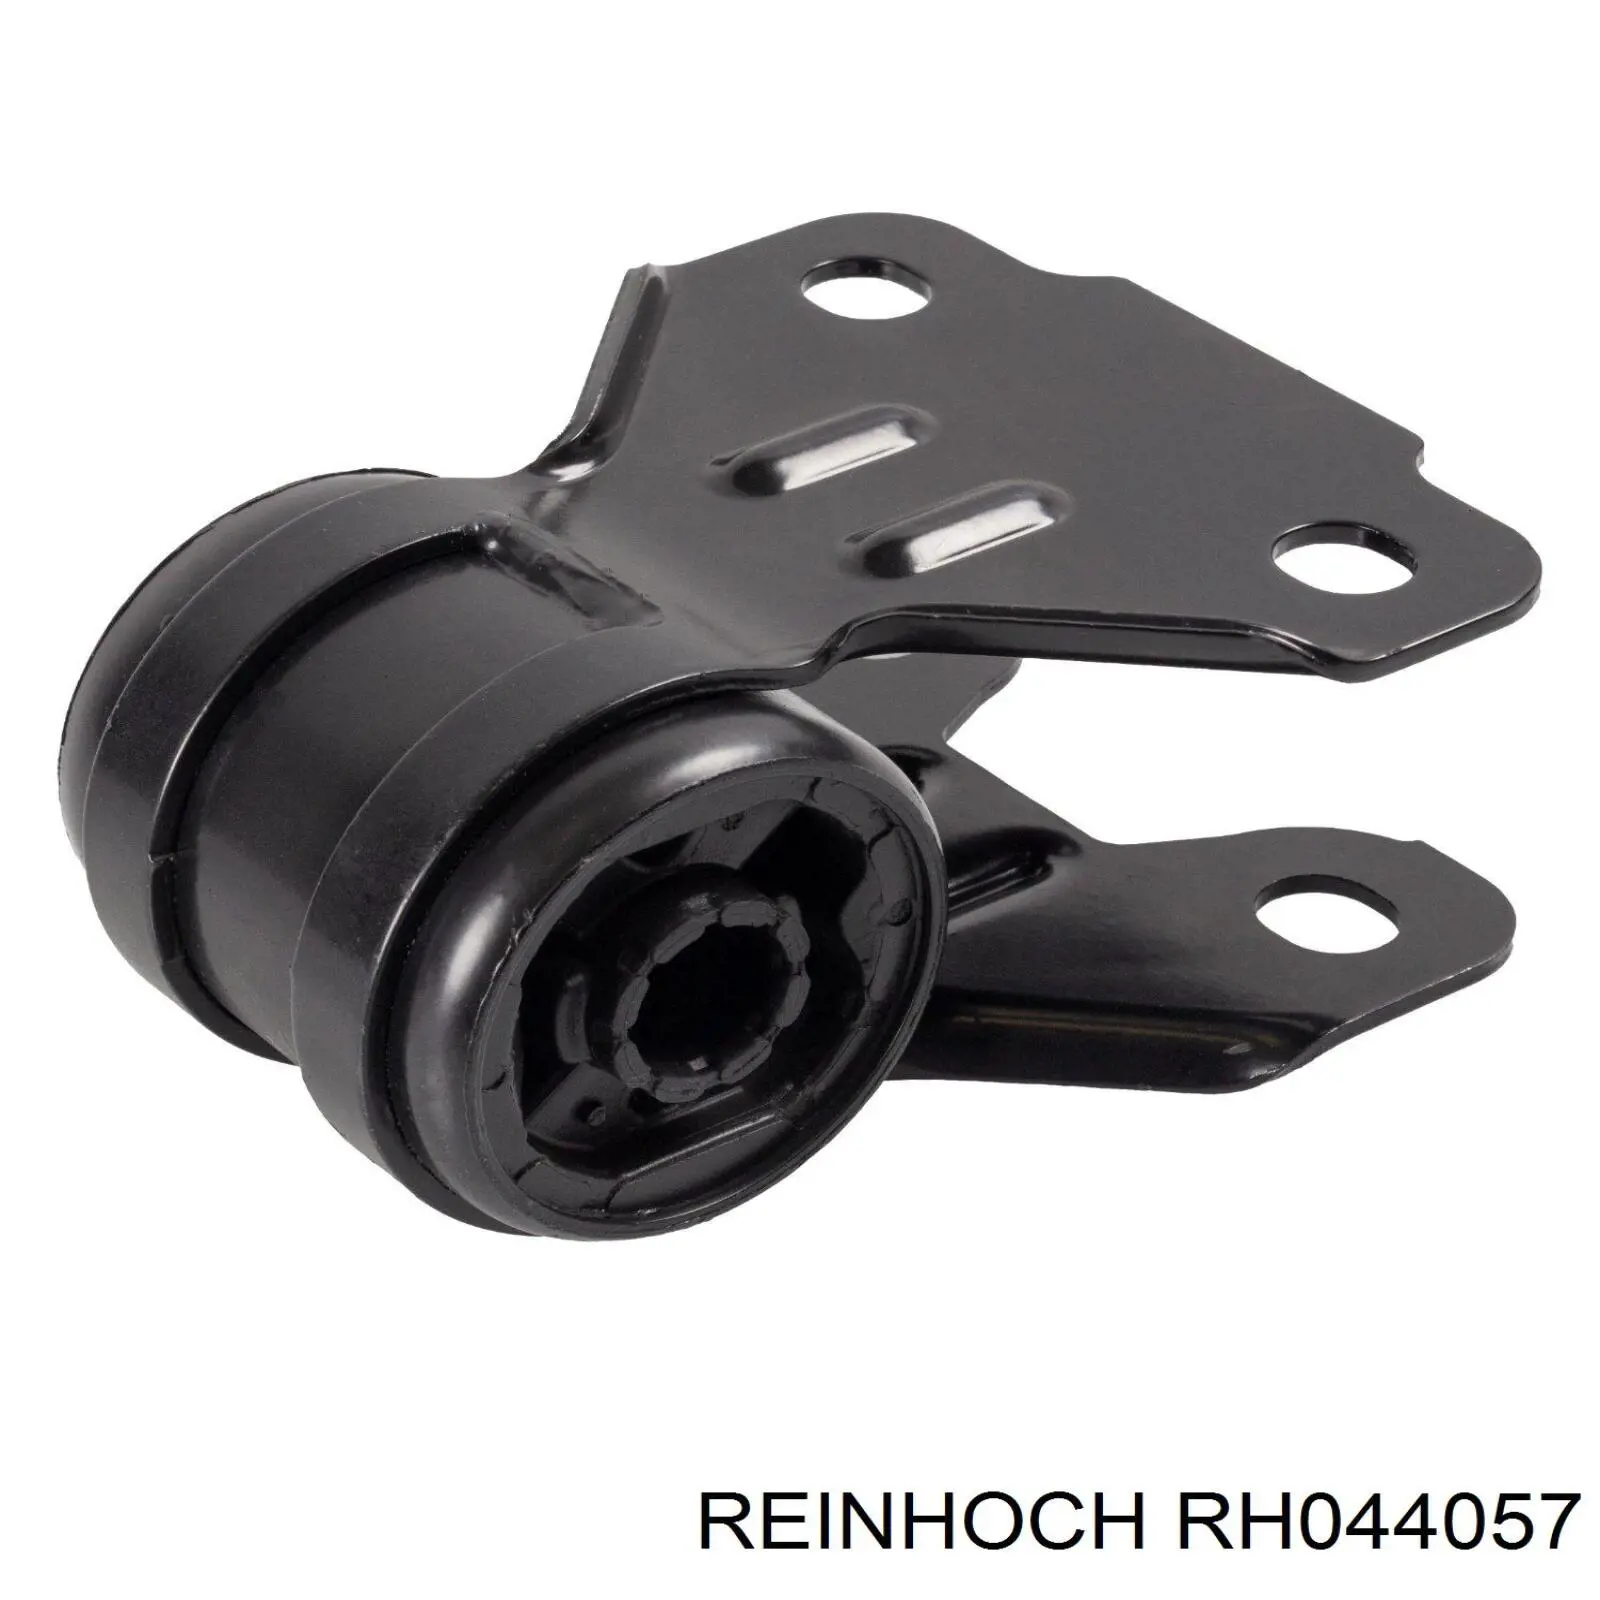 RH044057 Reinhoch barra oscilante, suspensión de ruedas delantera, inferior izquierda